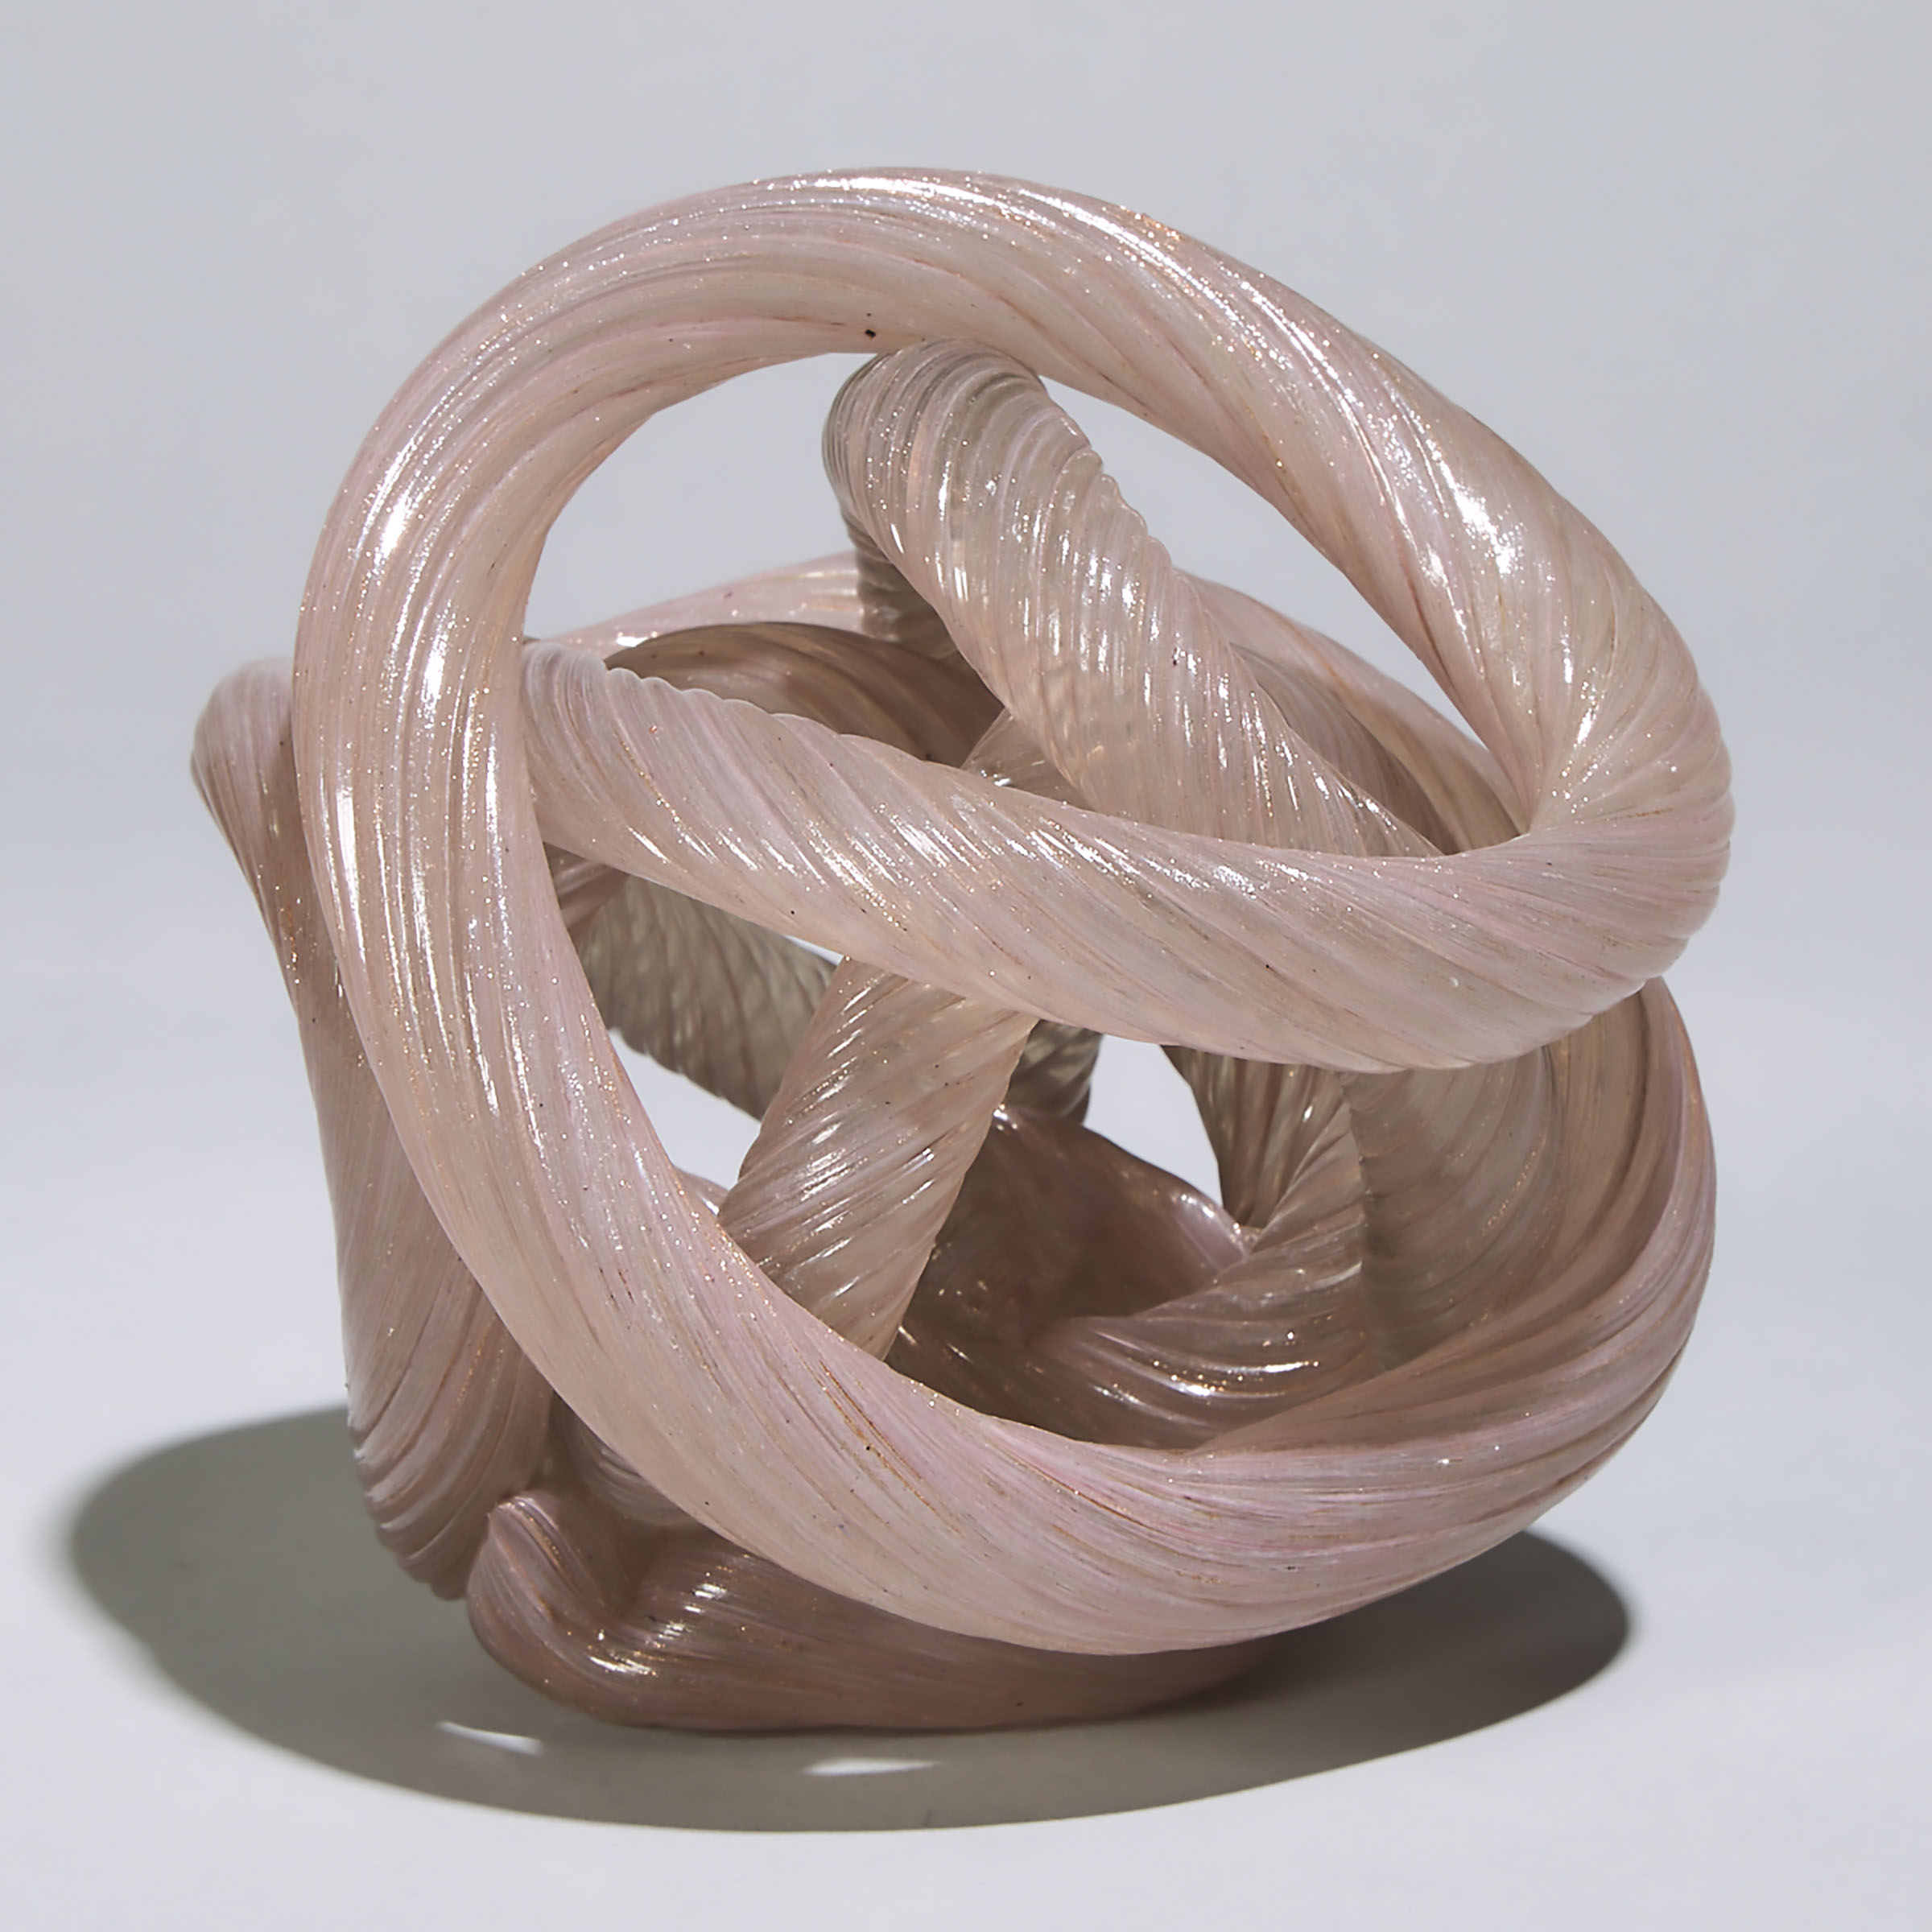 Murano Glass Rope Knot, 20th century